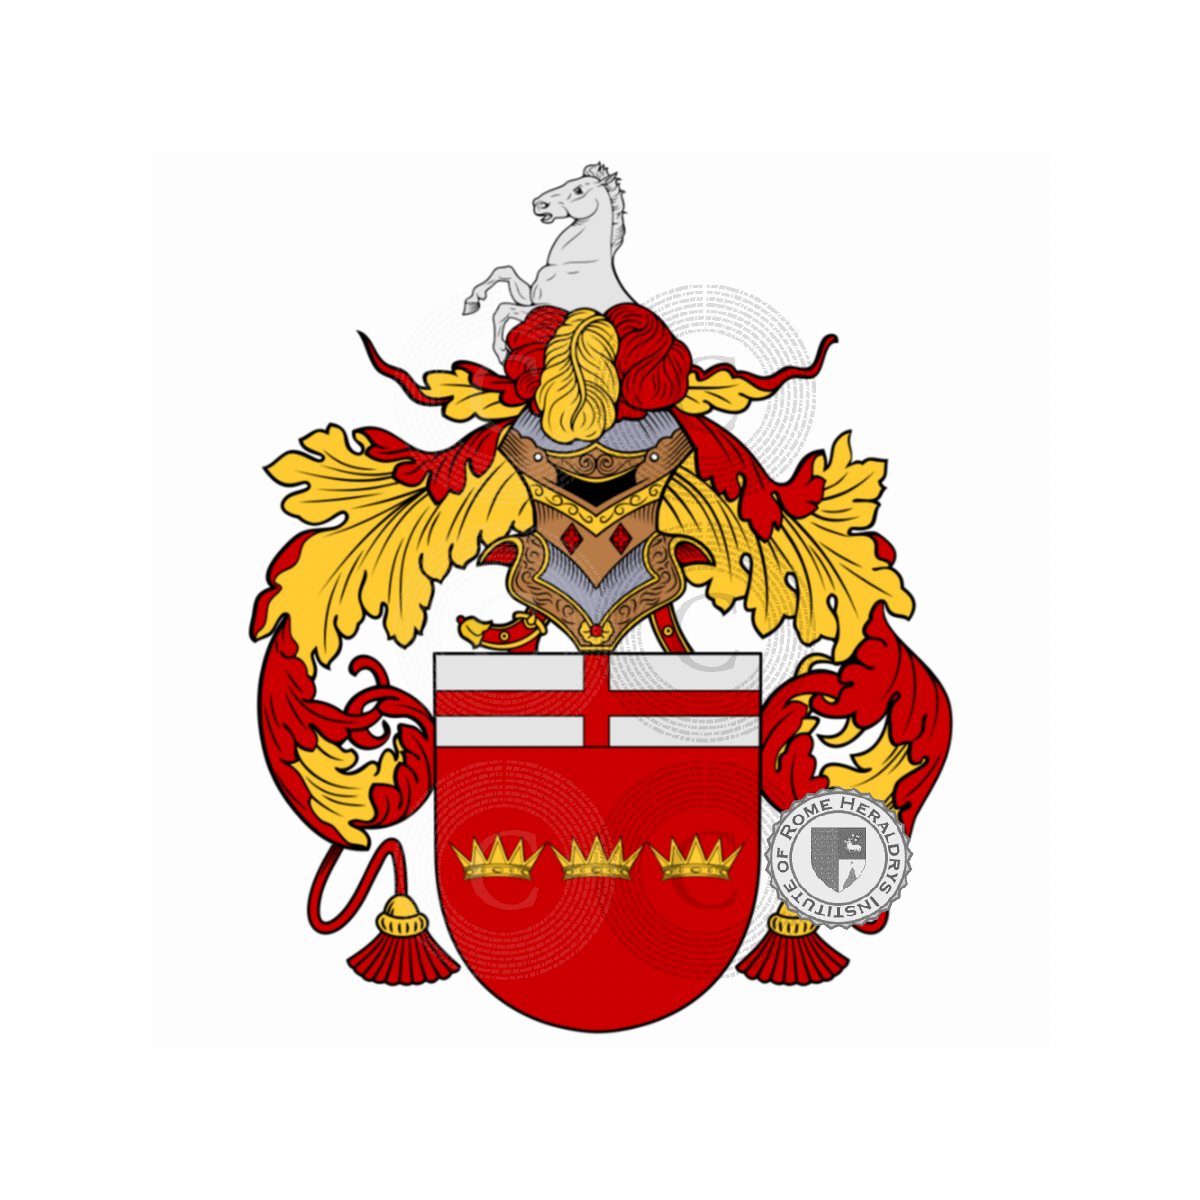 Wappen der FamilieFranqui, França,França Netto,França-Netto